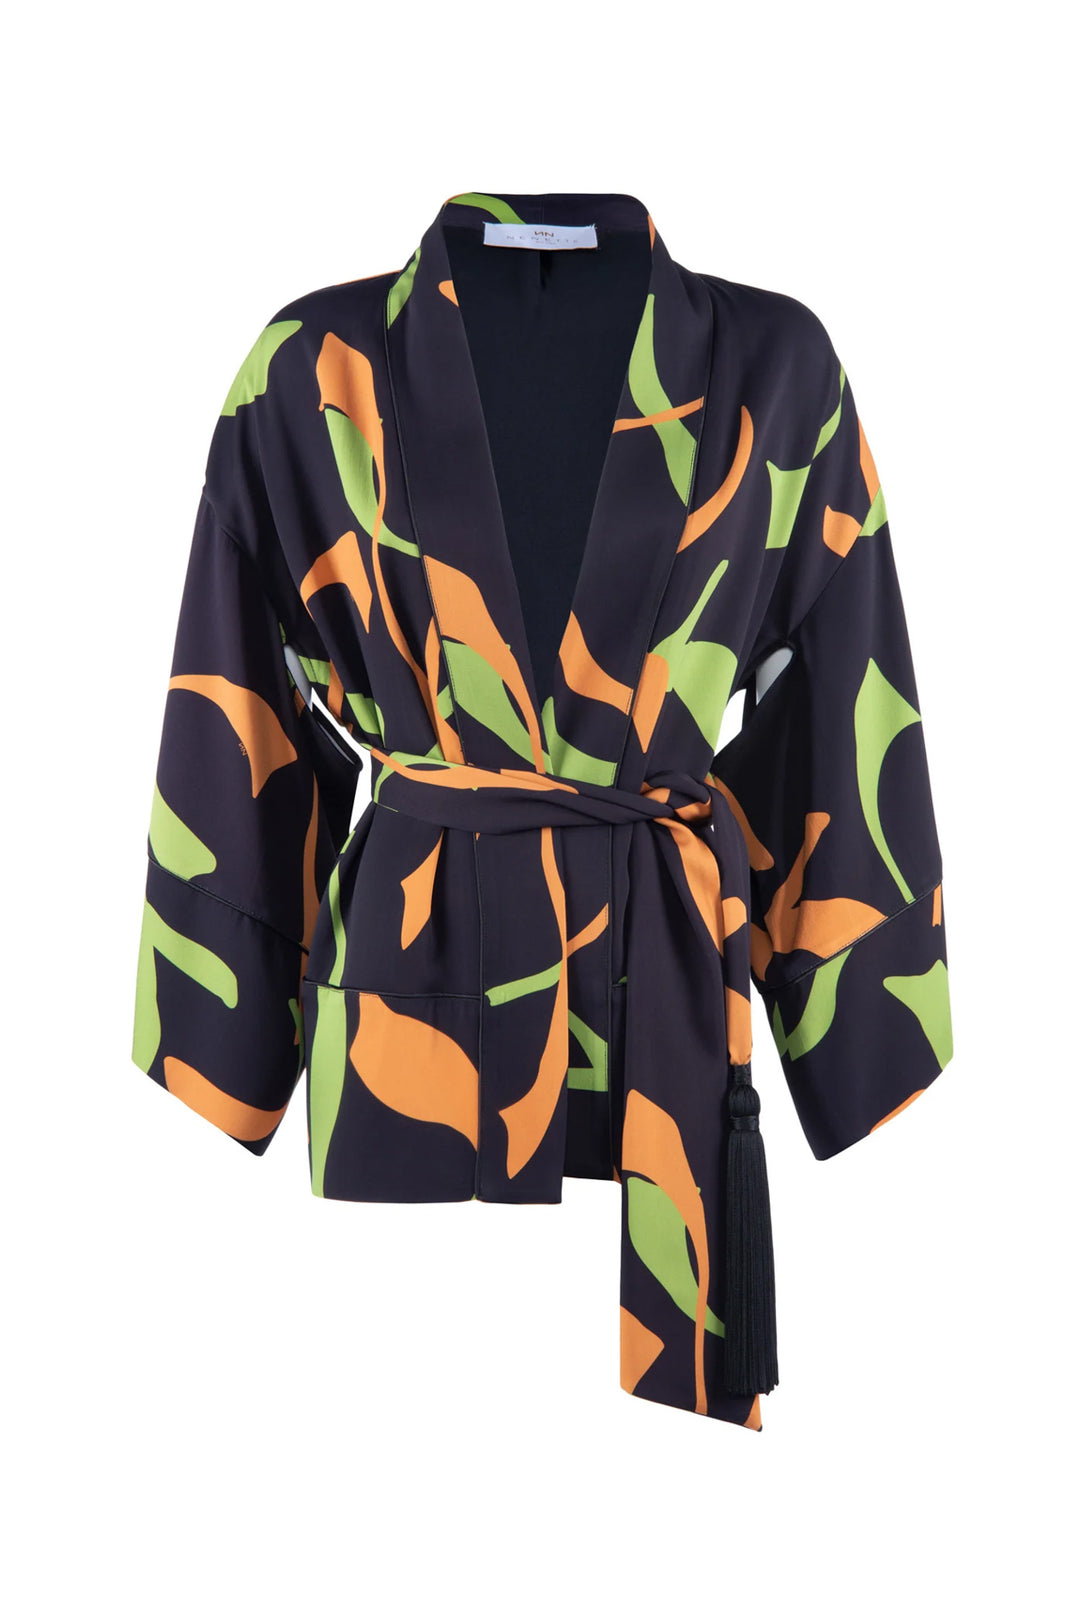 NENETTE Giacca kimono “VICE” nera con stampa verde e arancio - Mancinelli 1954